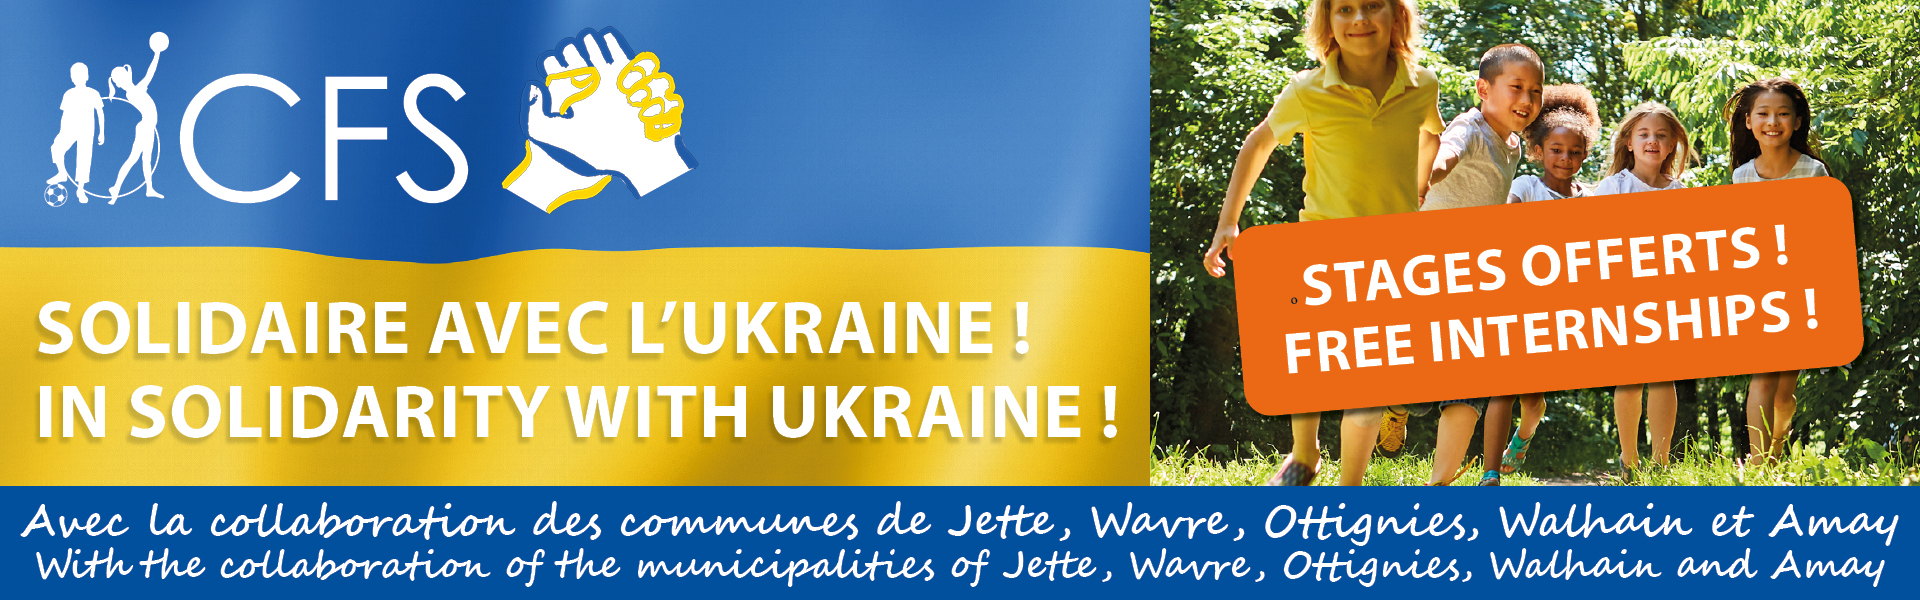 💙 Le CFS, solidaire avec l'Ukraine 💛